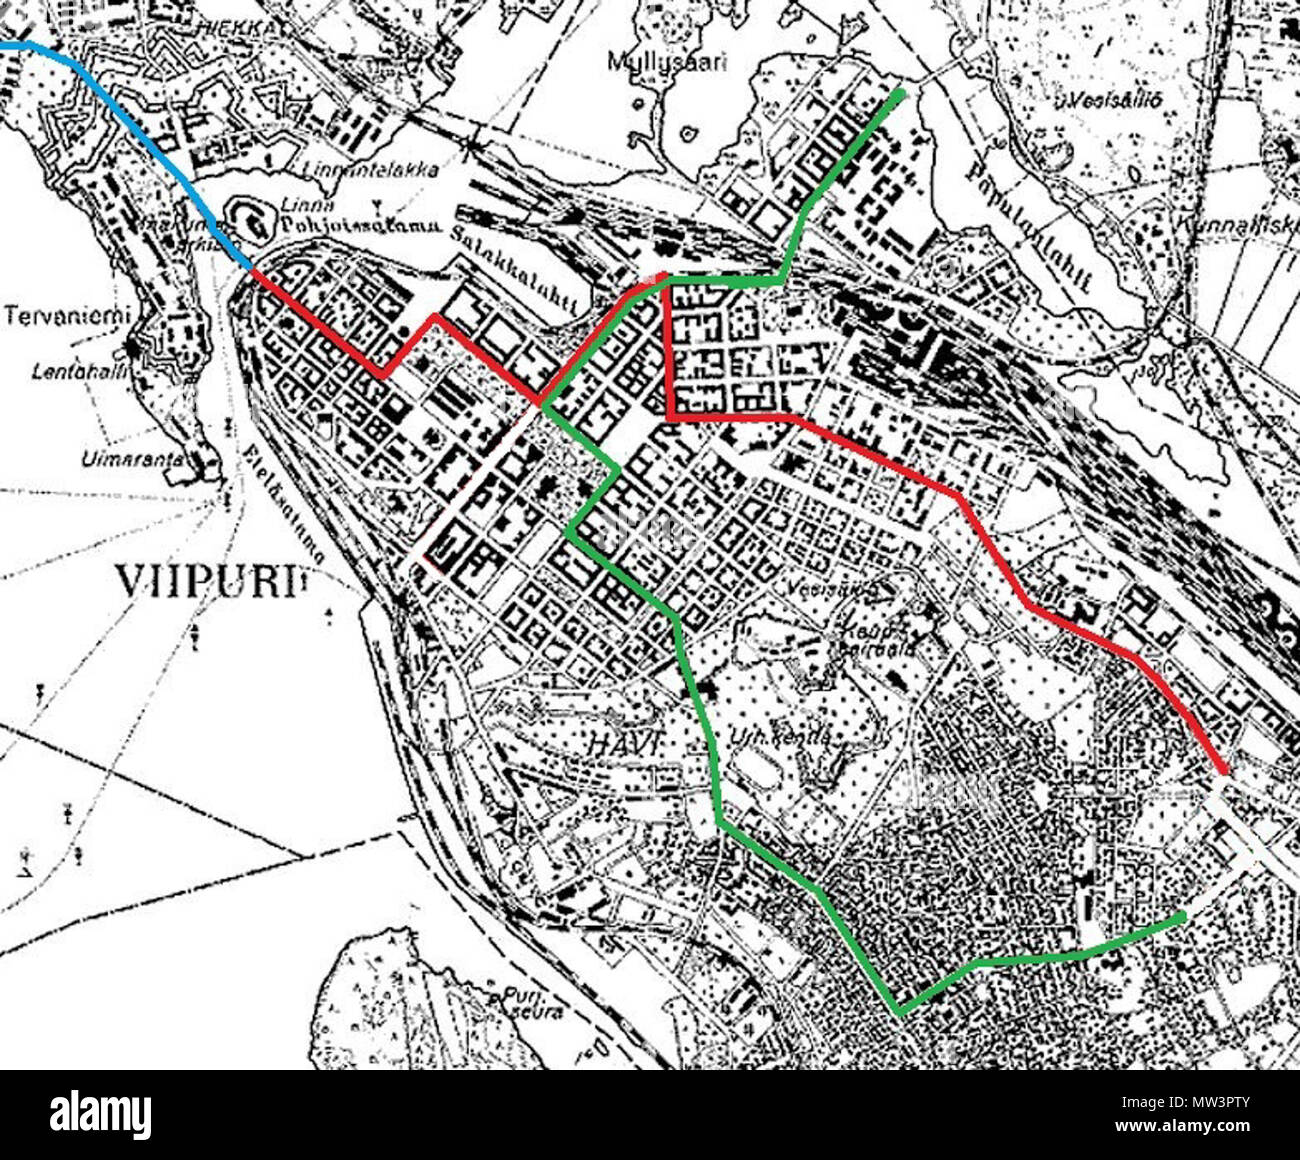 . English: Vyborg tram route map in the 1930s. Line 1 - red / Line 2 - green / Line 3 - blue Suomi: Viipurin raitoliikenteen linjat 1930-luvulla. Linja 1 (punainen): Raatihuoneentori - Ristimäki / Linja 2 (vihreä): Papula - Kelkkala / Linja 3 (sininen): Turun silta - Palotori . 1939. National Land Survey of Finland 630 Viborg Tram Map Stock Photo